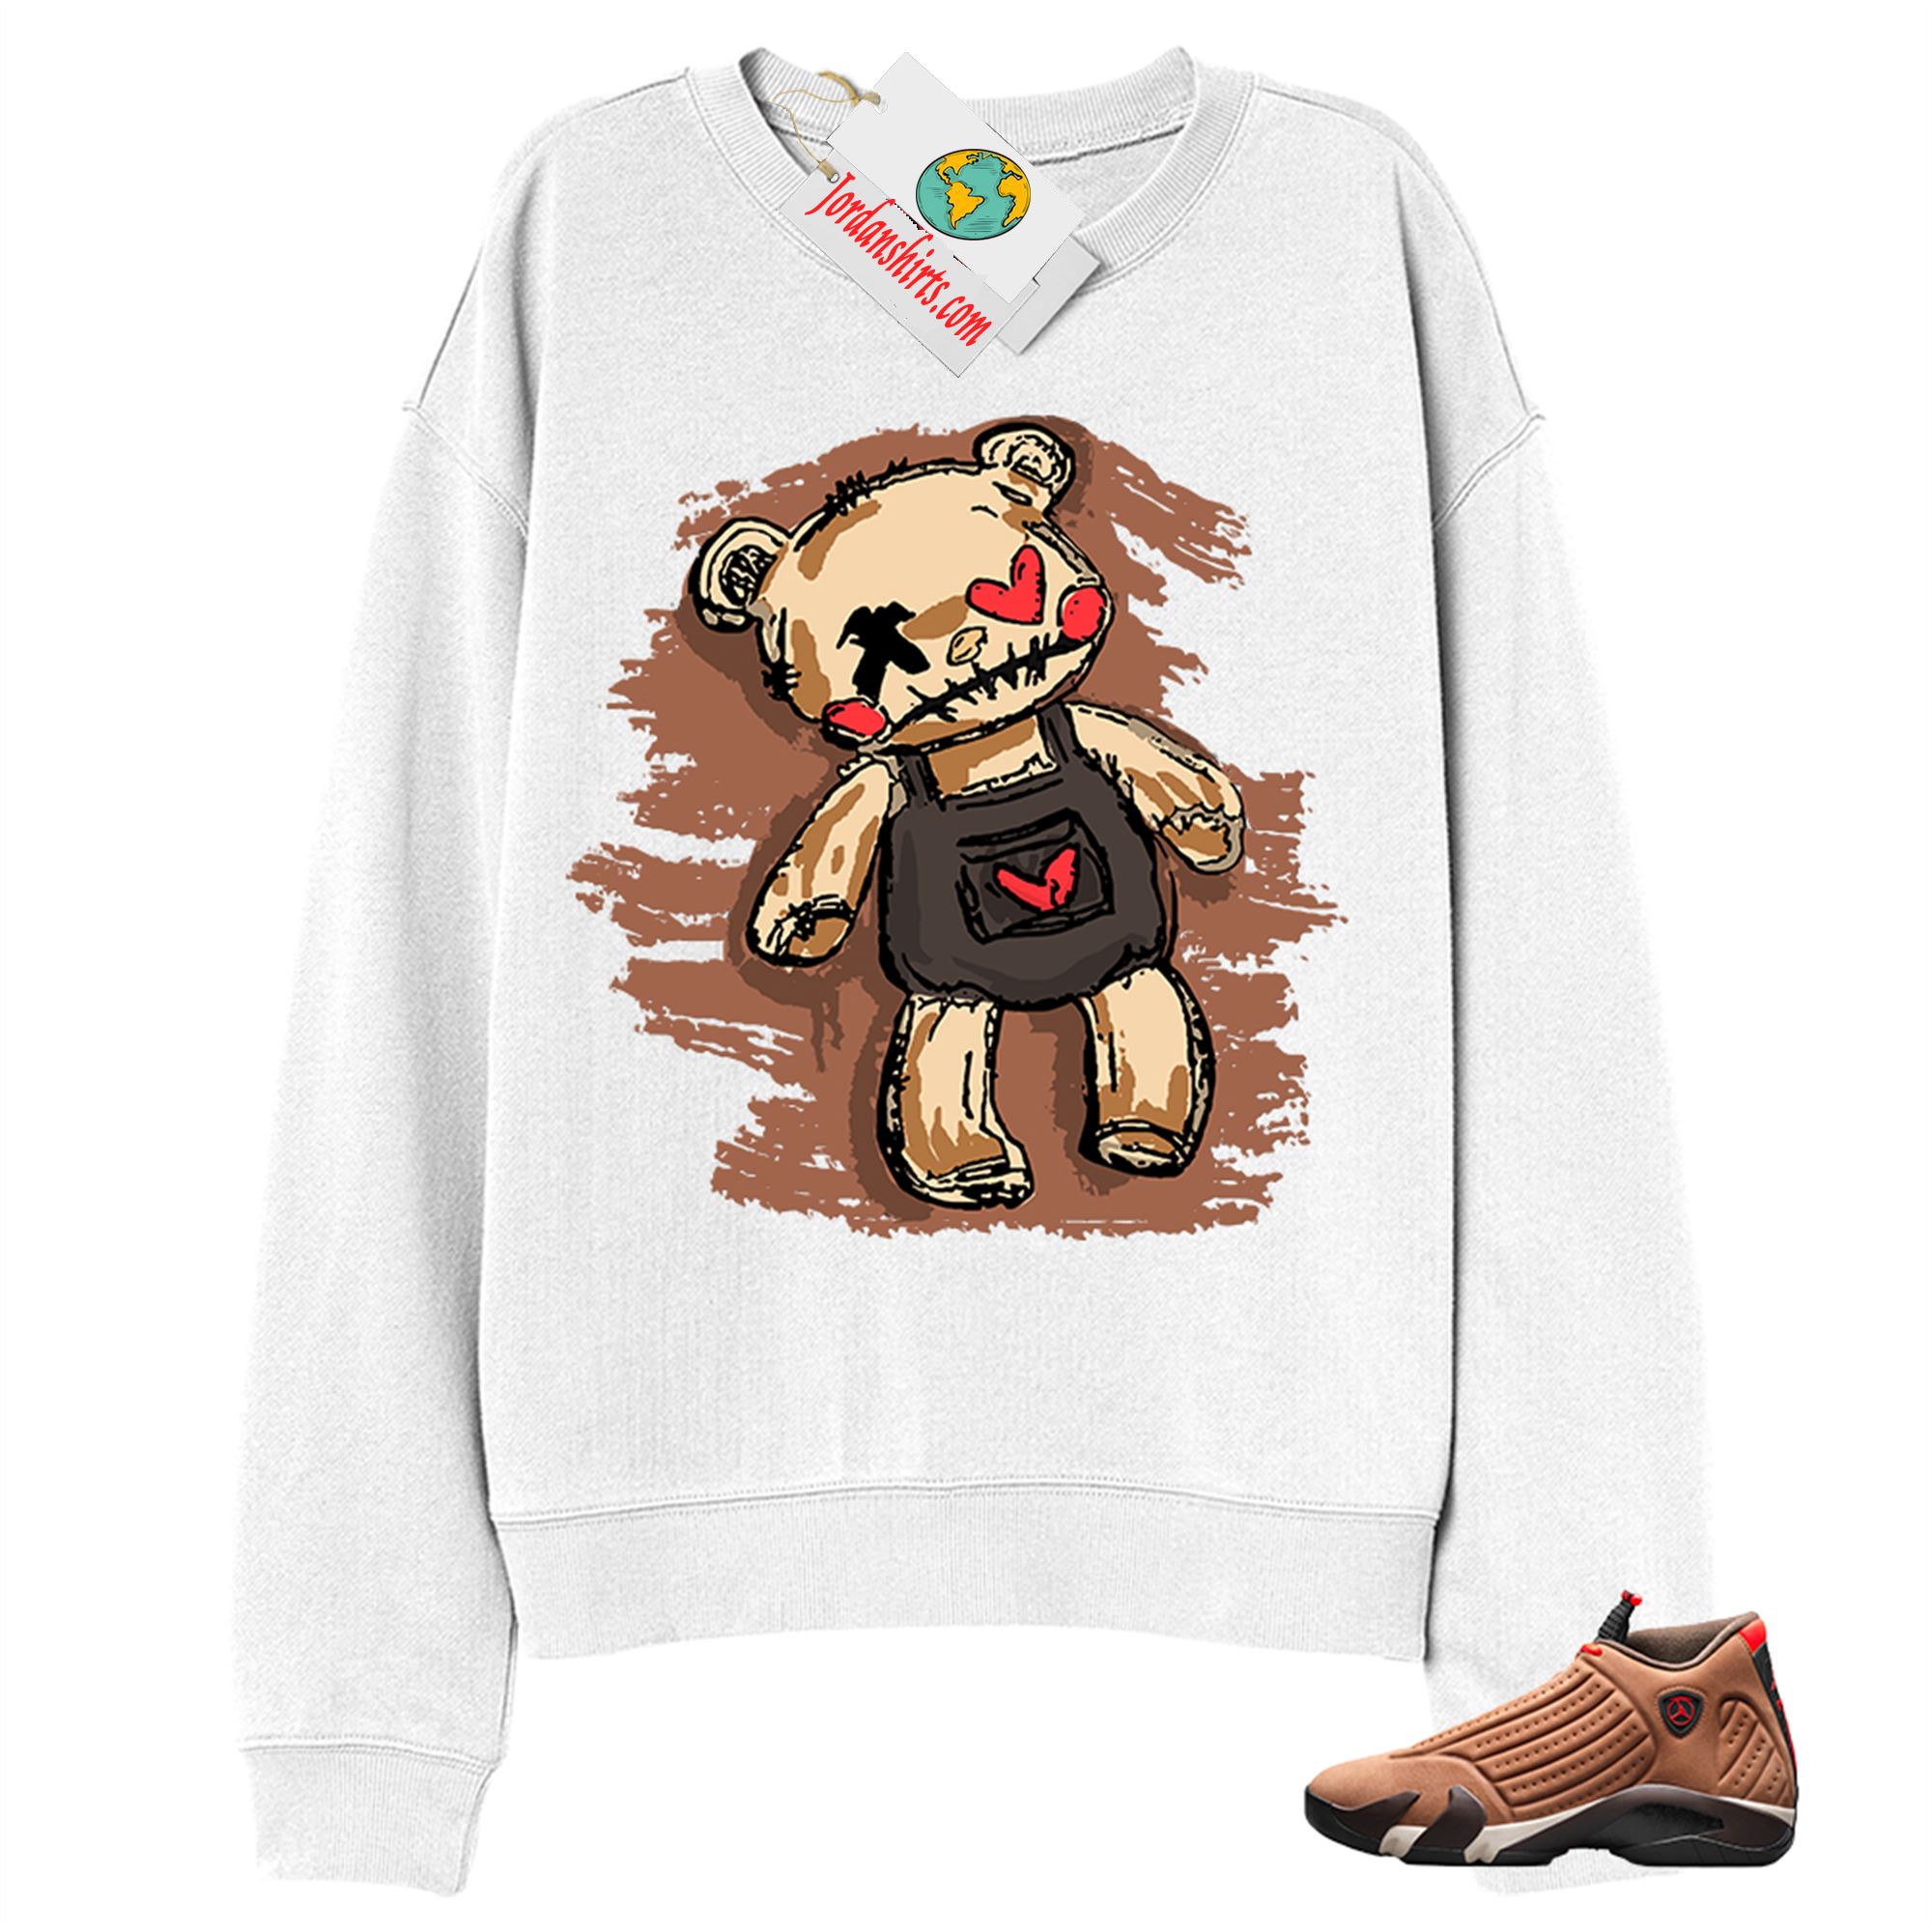 Jordan 14 Sweatshirt, Teddy Bear Broken Heart White Sweatshirt Air Jordan 14 Winterized 14s Plus Size Up To 5xl